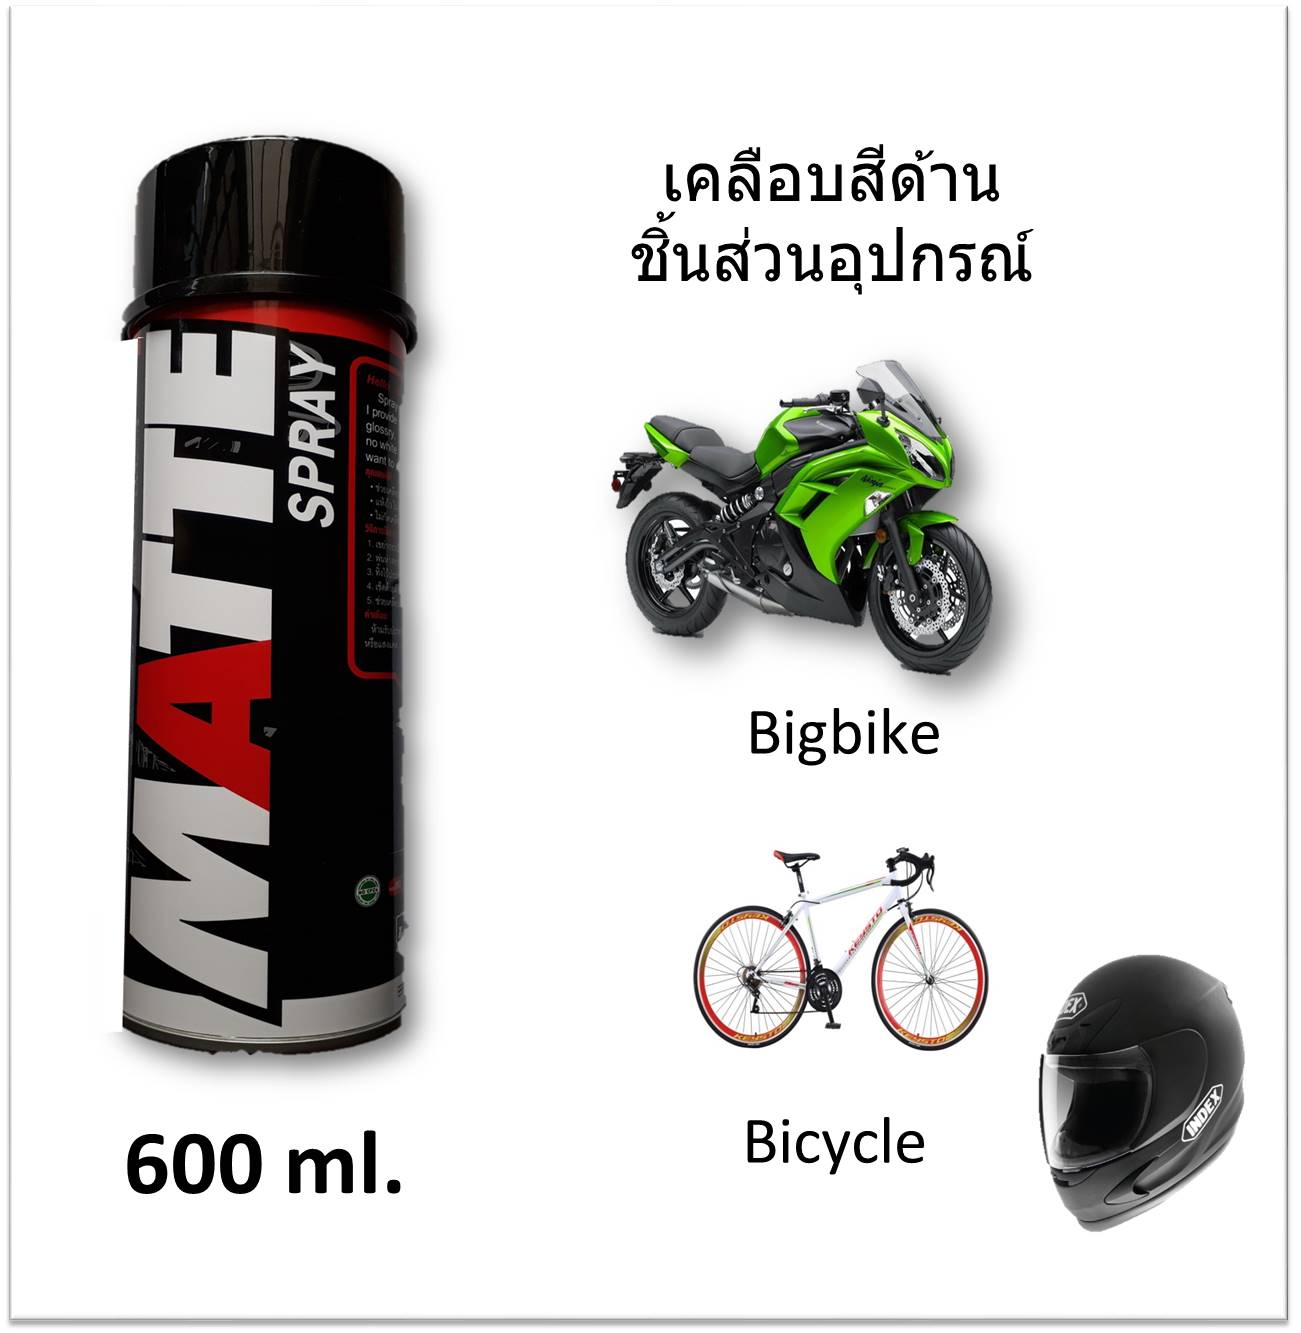 Matte Spray สเปรย์เคลือบสีด้าน ขนาด 600 ml. เหมาะสำหรับชิ้นส่วน (บิ๊กไบค์/รถมอไซค์/จักรยาน/หมวกกันน๊อคและชิ้นงานทั่วไป)